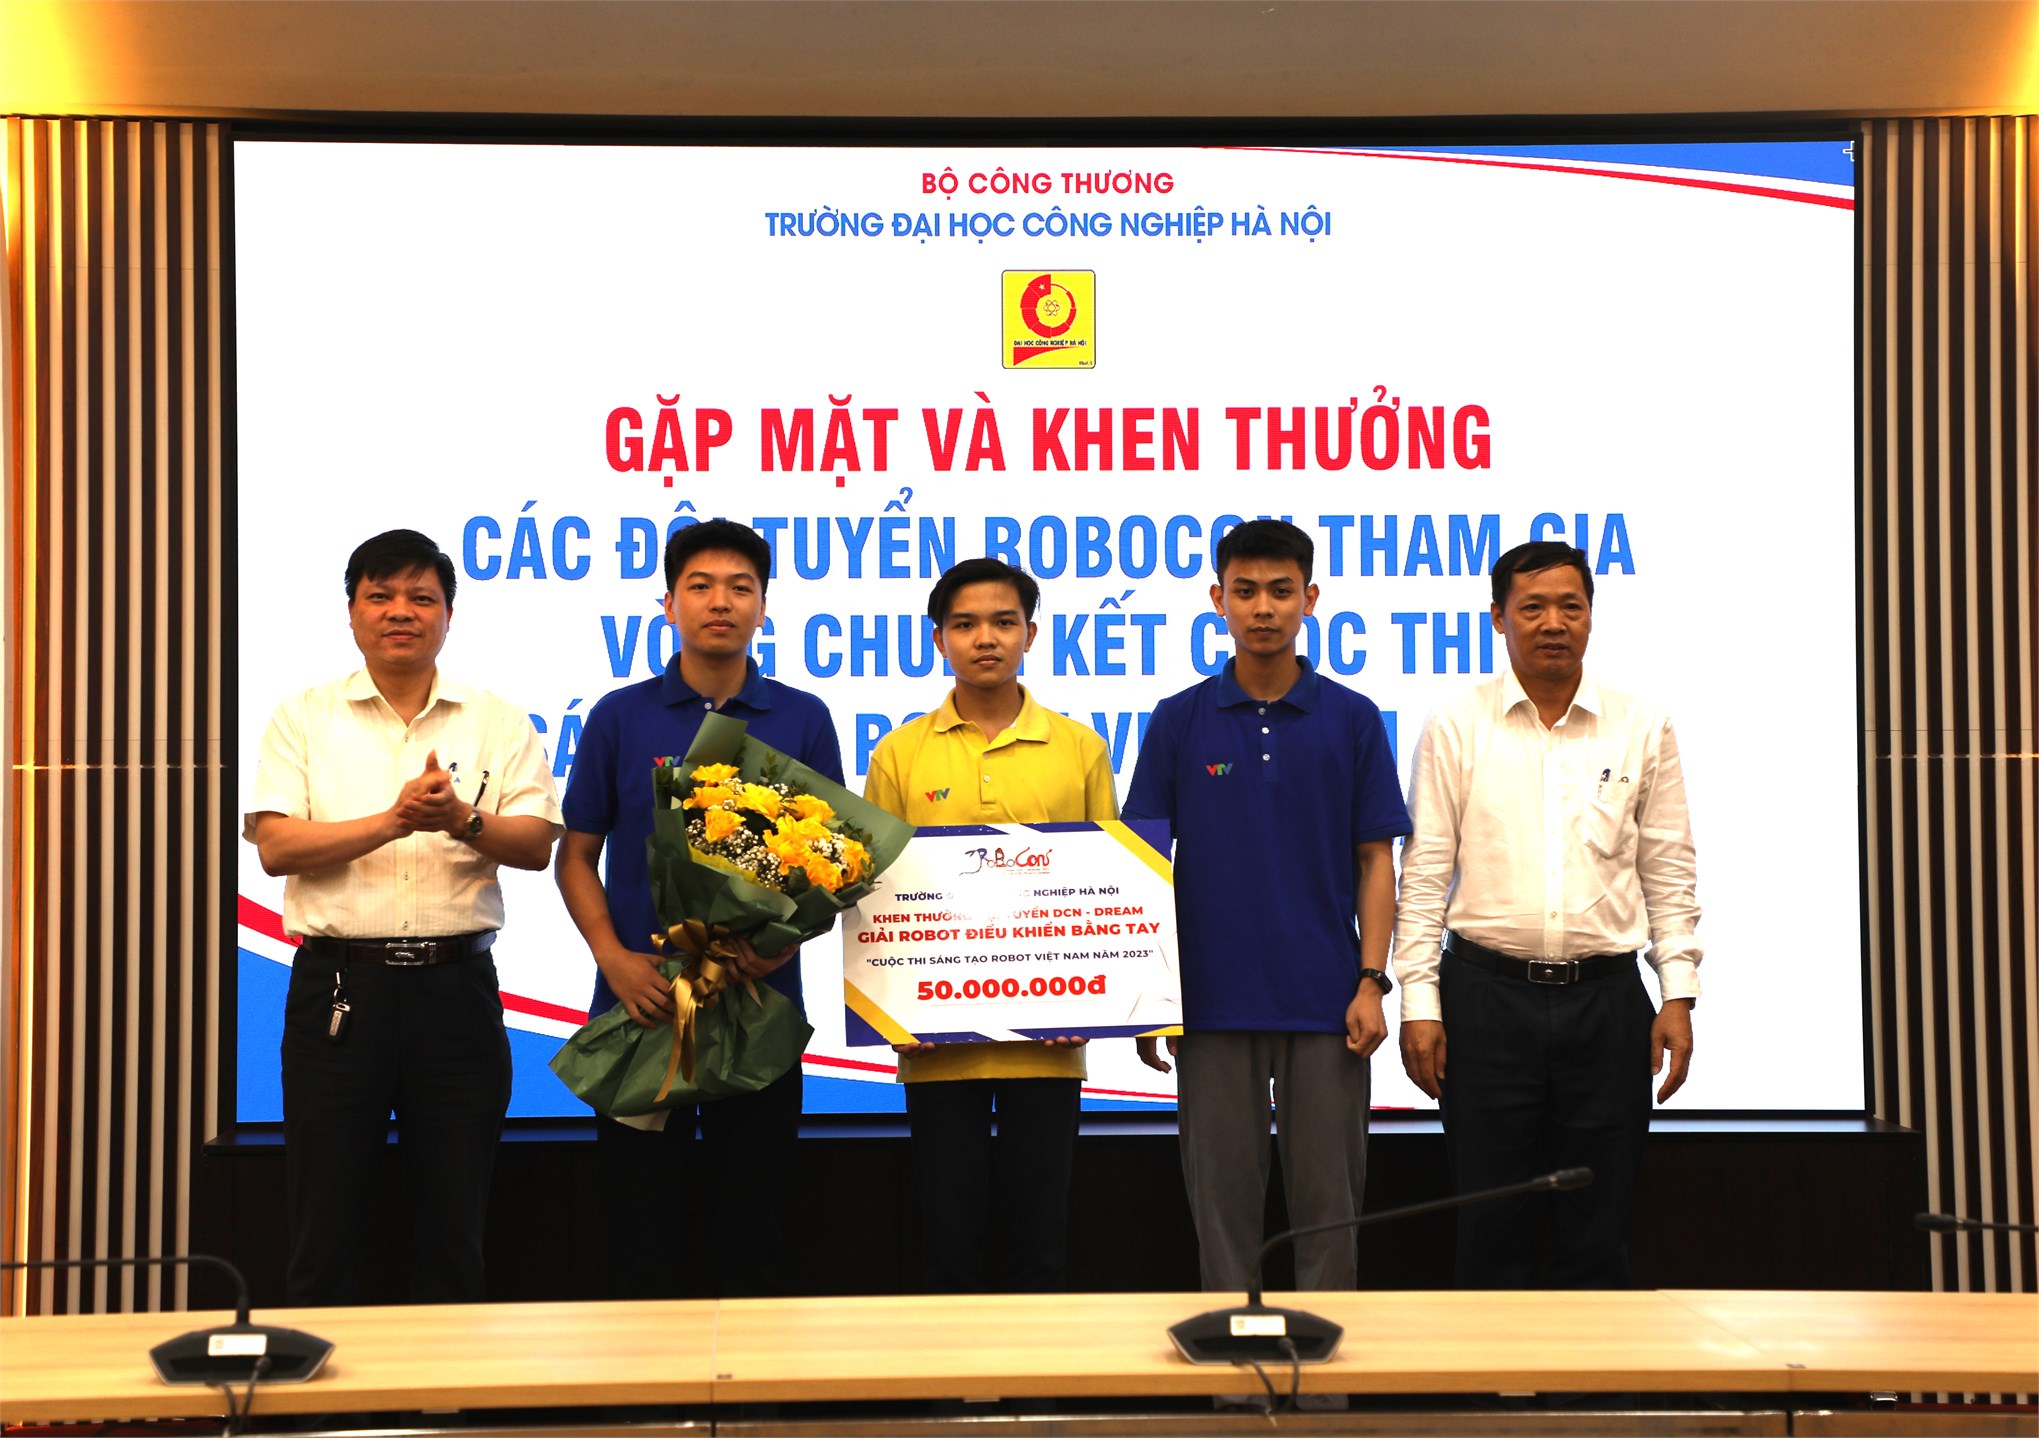 Đại học Công nghiệp Hà Nội gặp mặt và khen thưởng các đội tuyển Robocon tham gia vòng chung kết Cuộc thi Sáng tạo Robot Việt Nam 2023